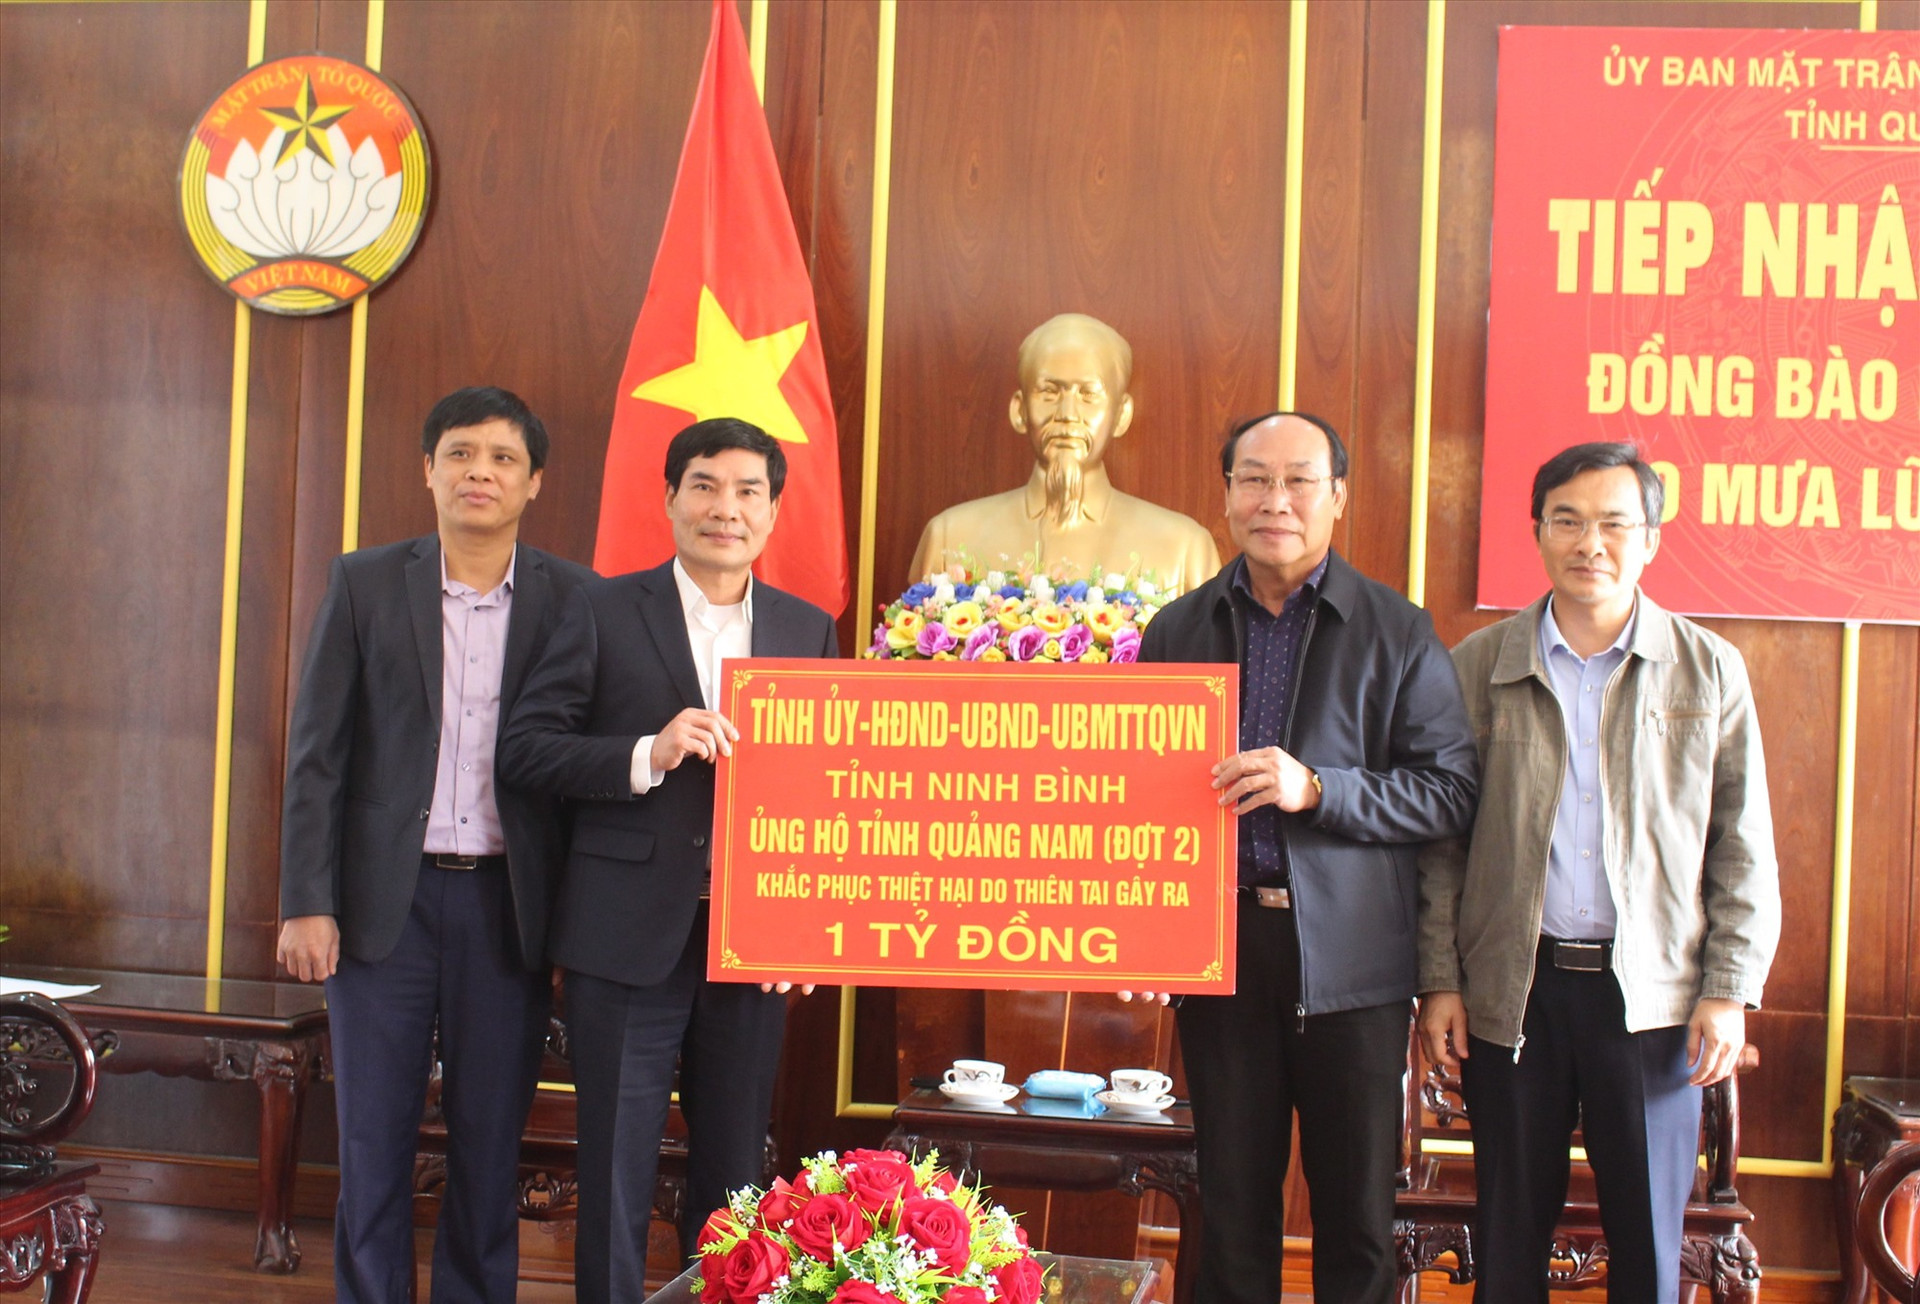 Tỉnh Ninh Bình ủng hộ 1 tỷ đồng giúp Quảng Nam khắc phục hậu quả bão lũ. Ảnh: V.A